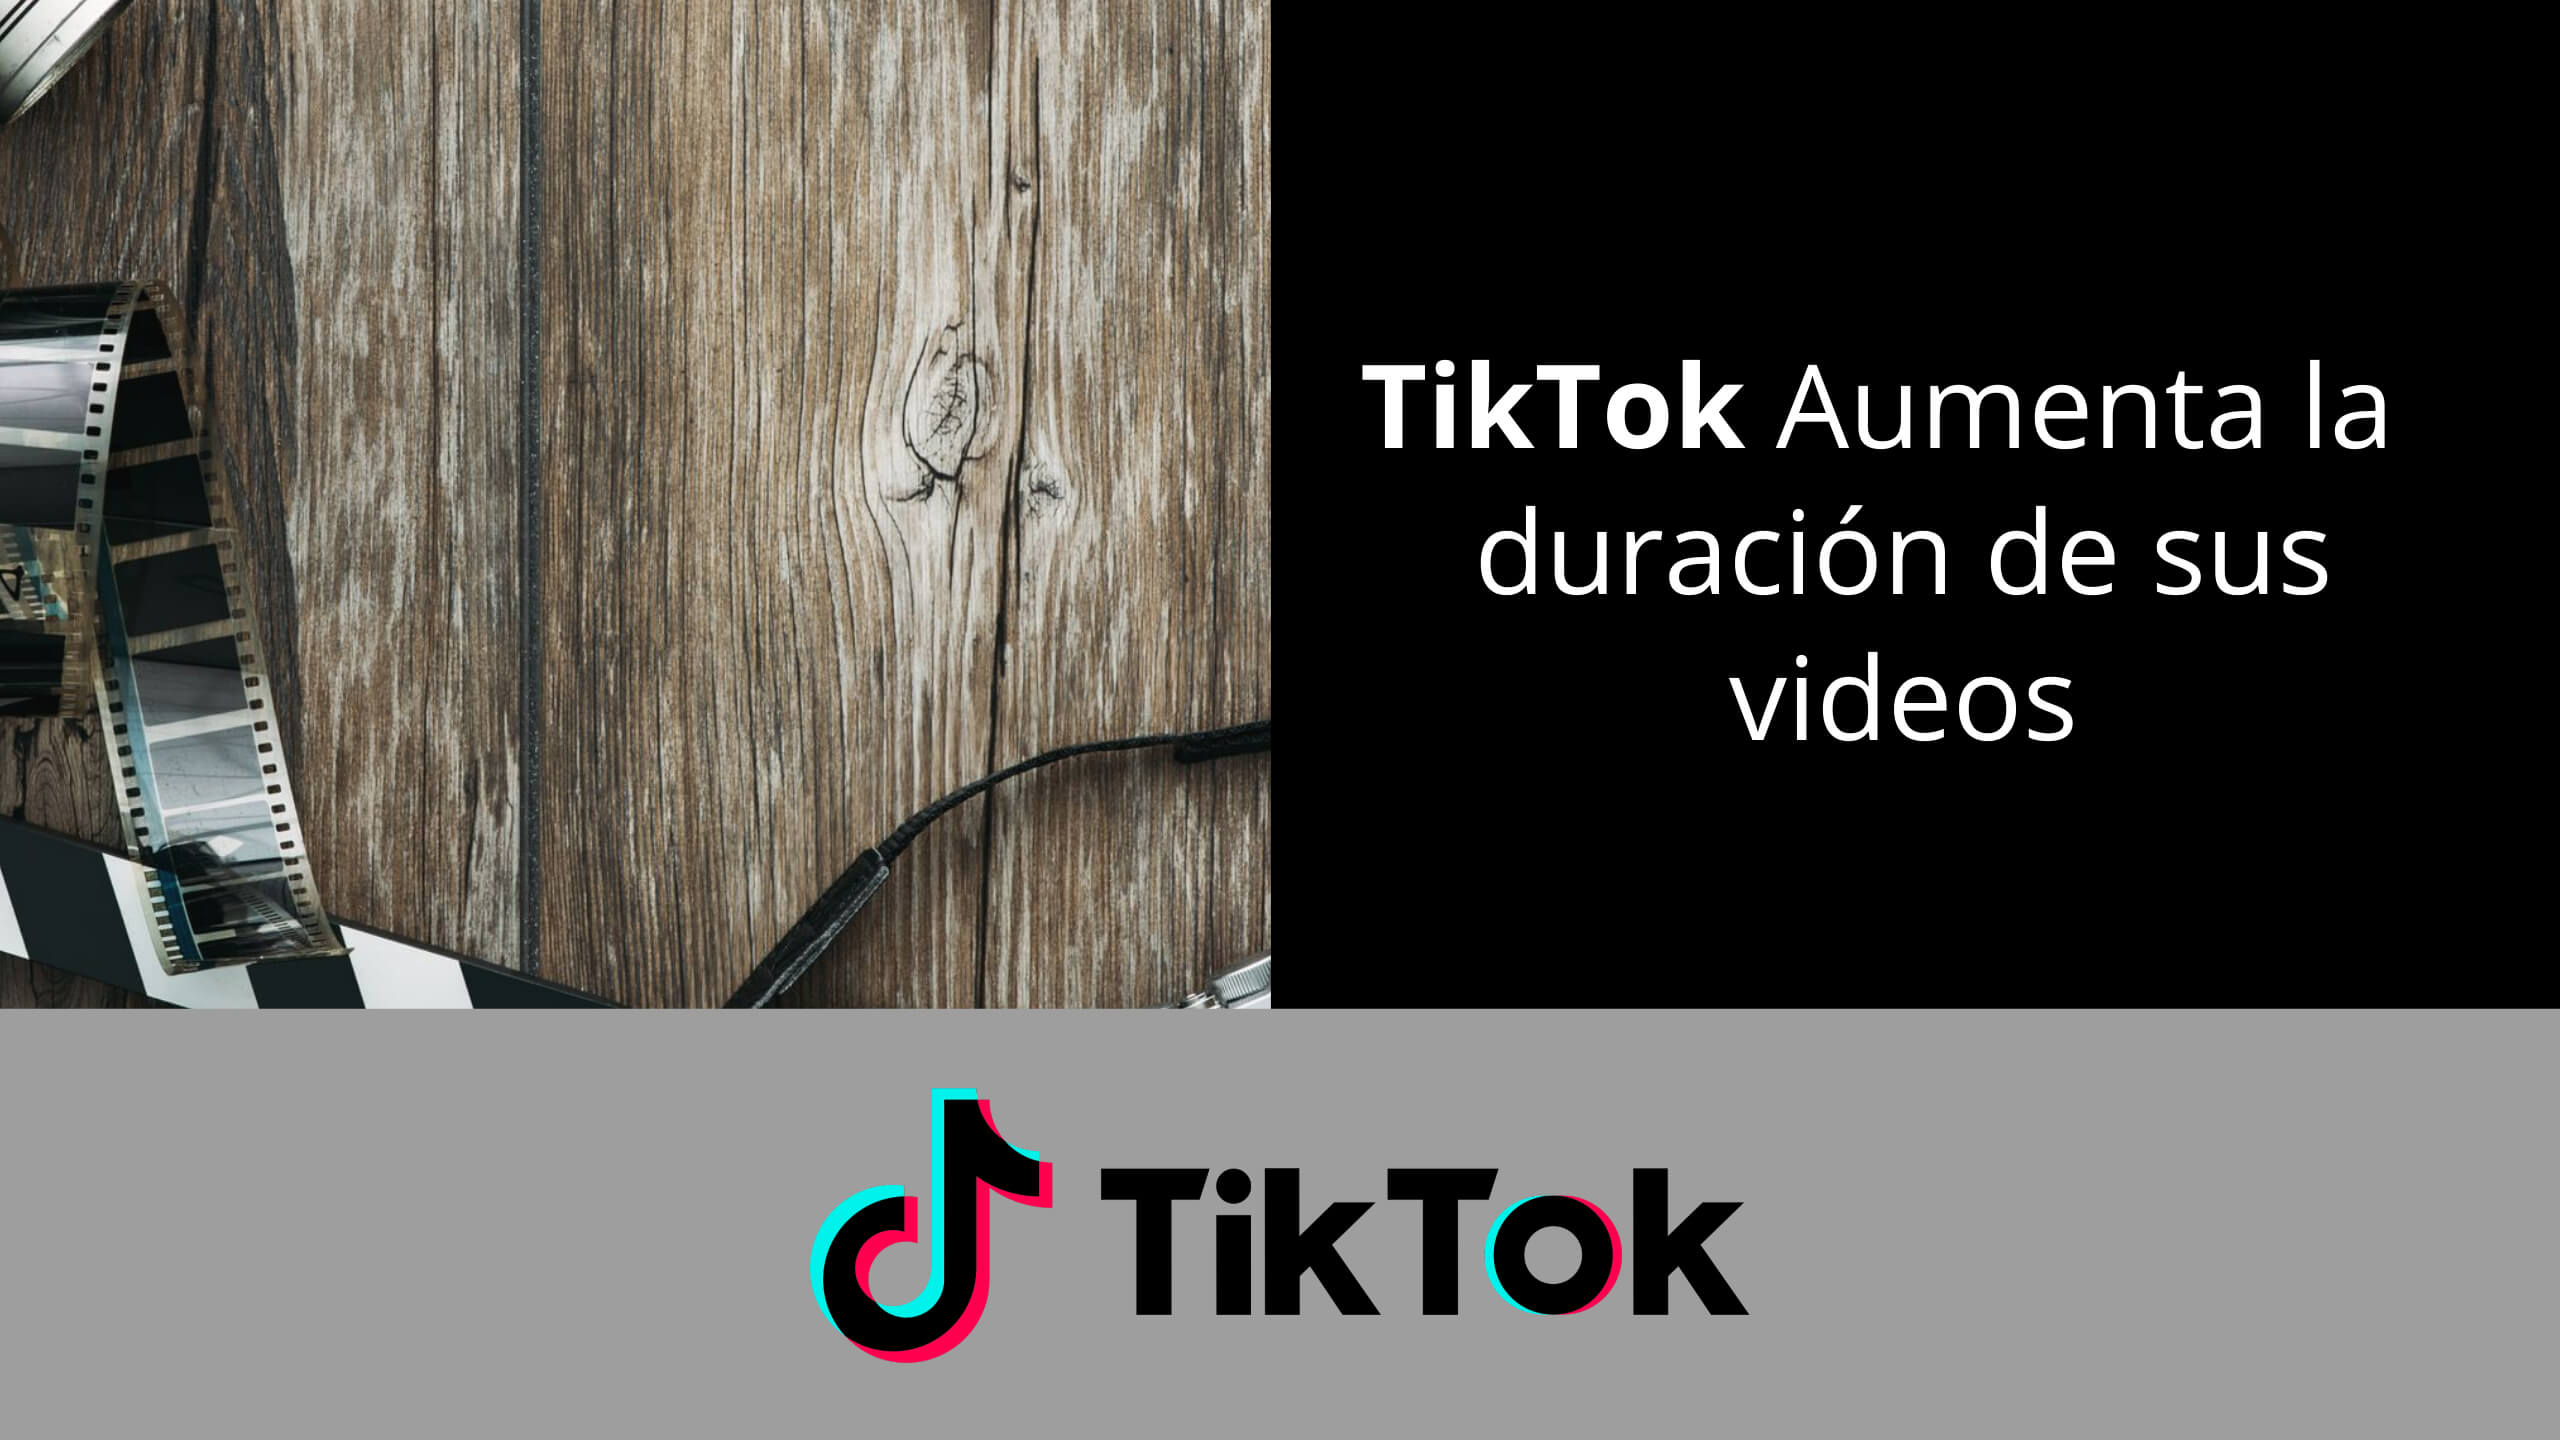 TikTok Aumenta la duración de sus videos a tres minutos